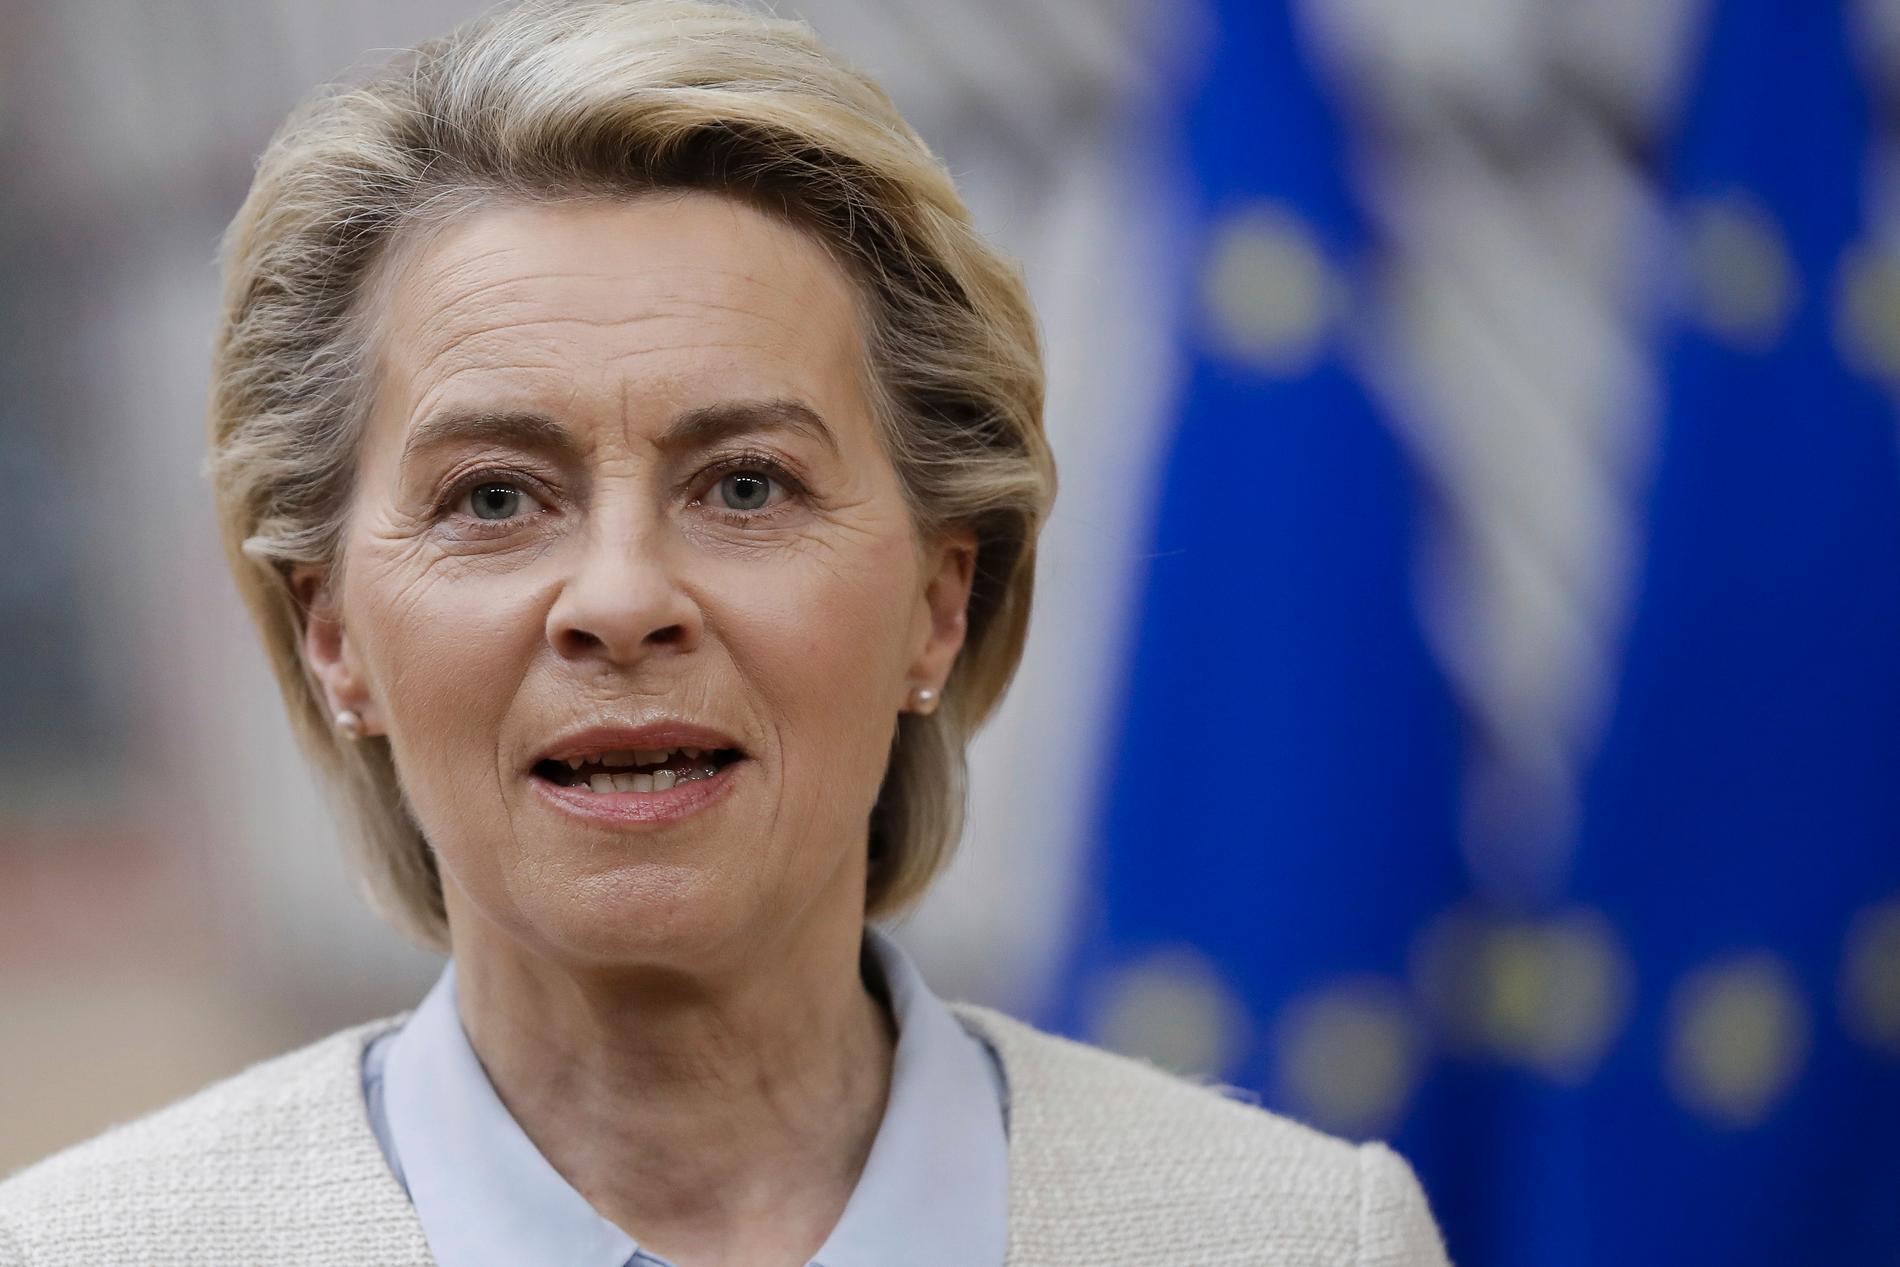 "Ett skandalöst beteende", säger EU-kommissionens ordförande Ursula von der Leyen om nedtvingandet av ett Ryanairflygplan i Minsk i Belarus.